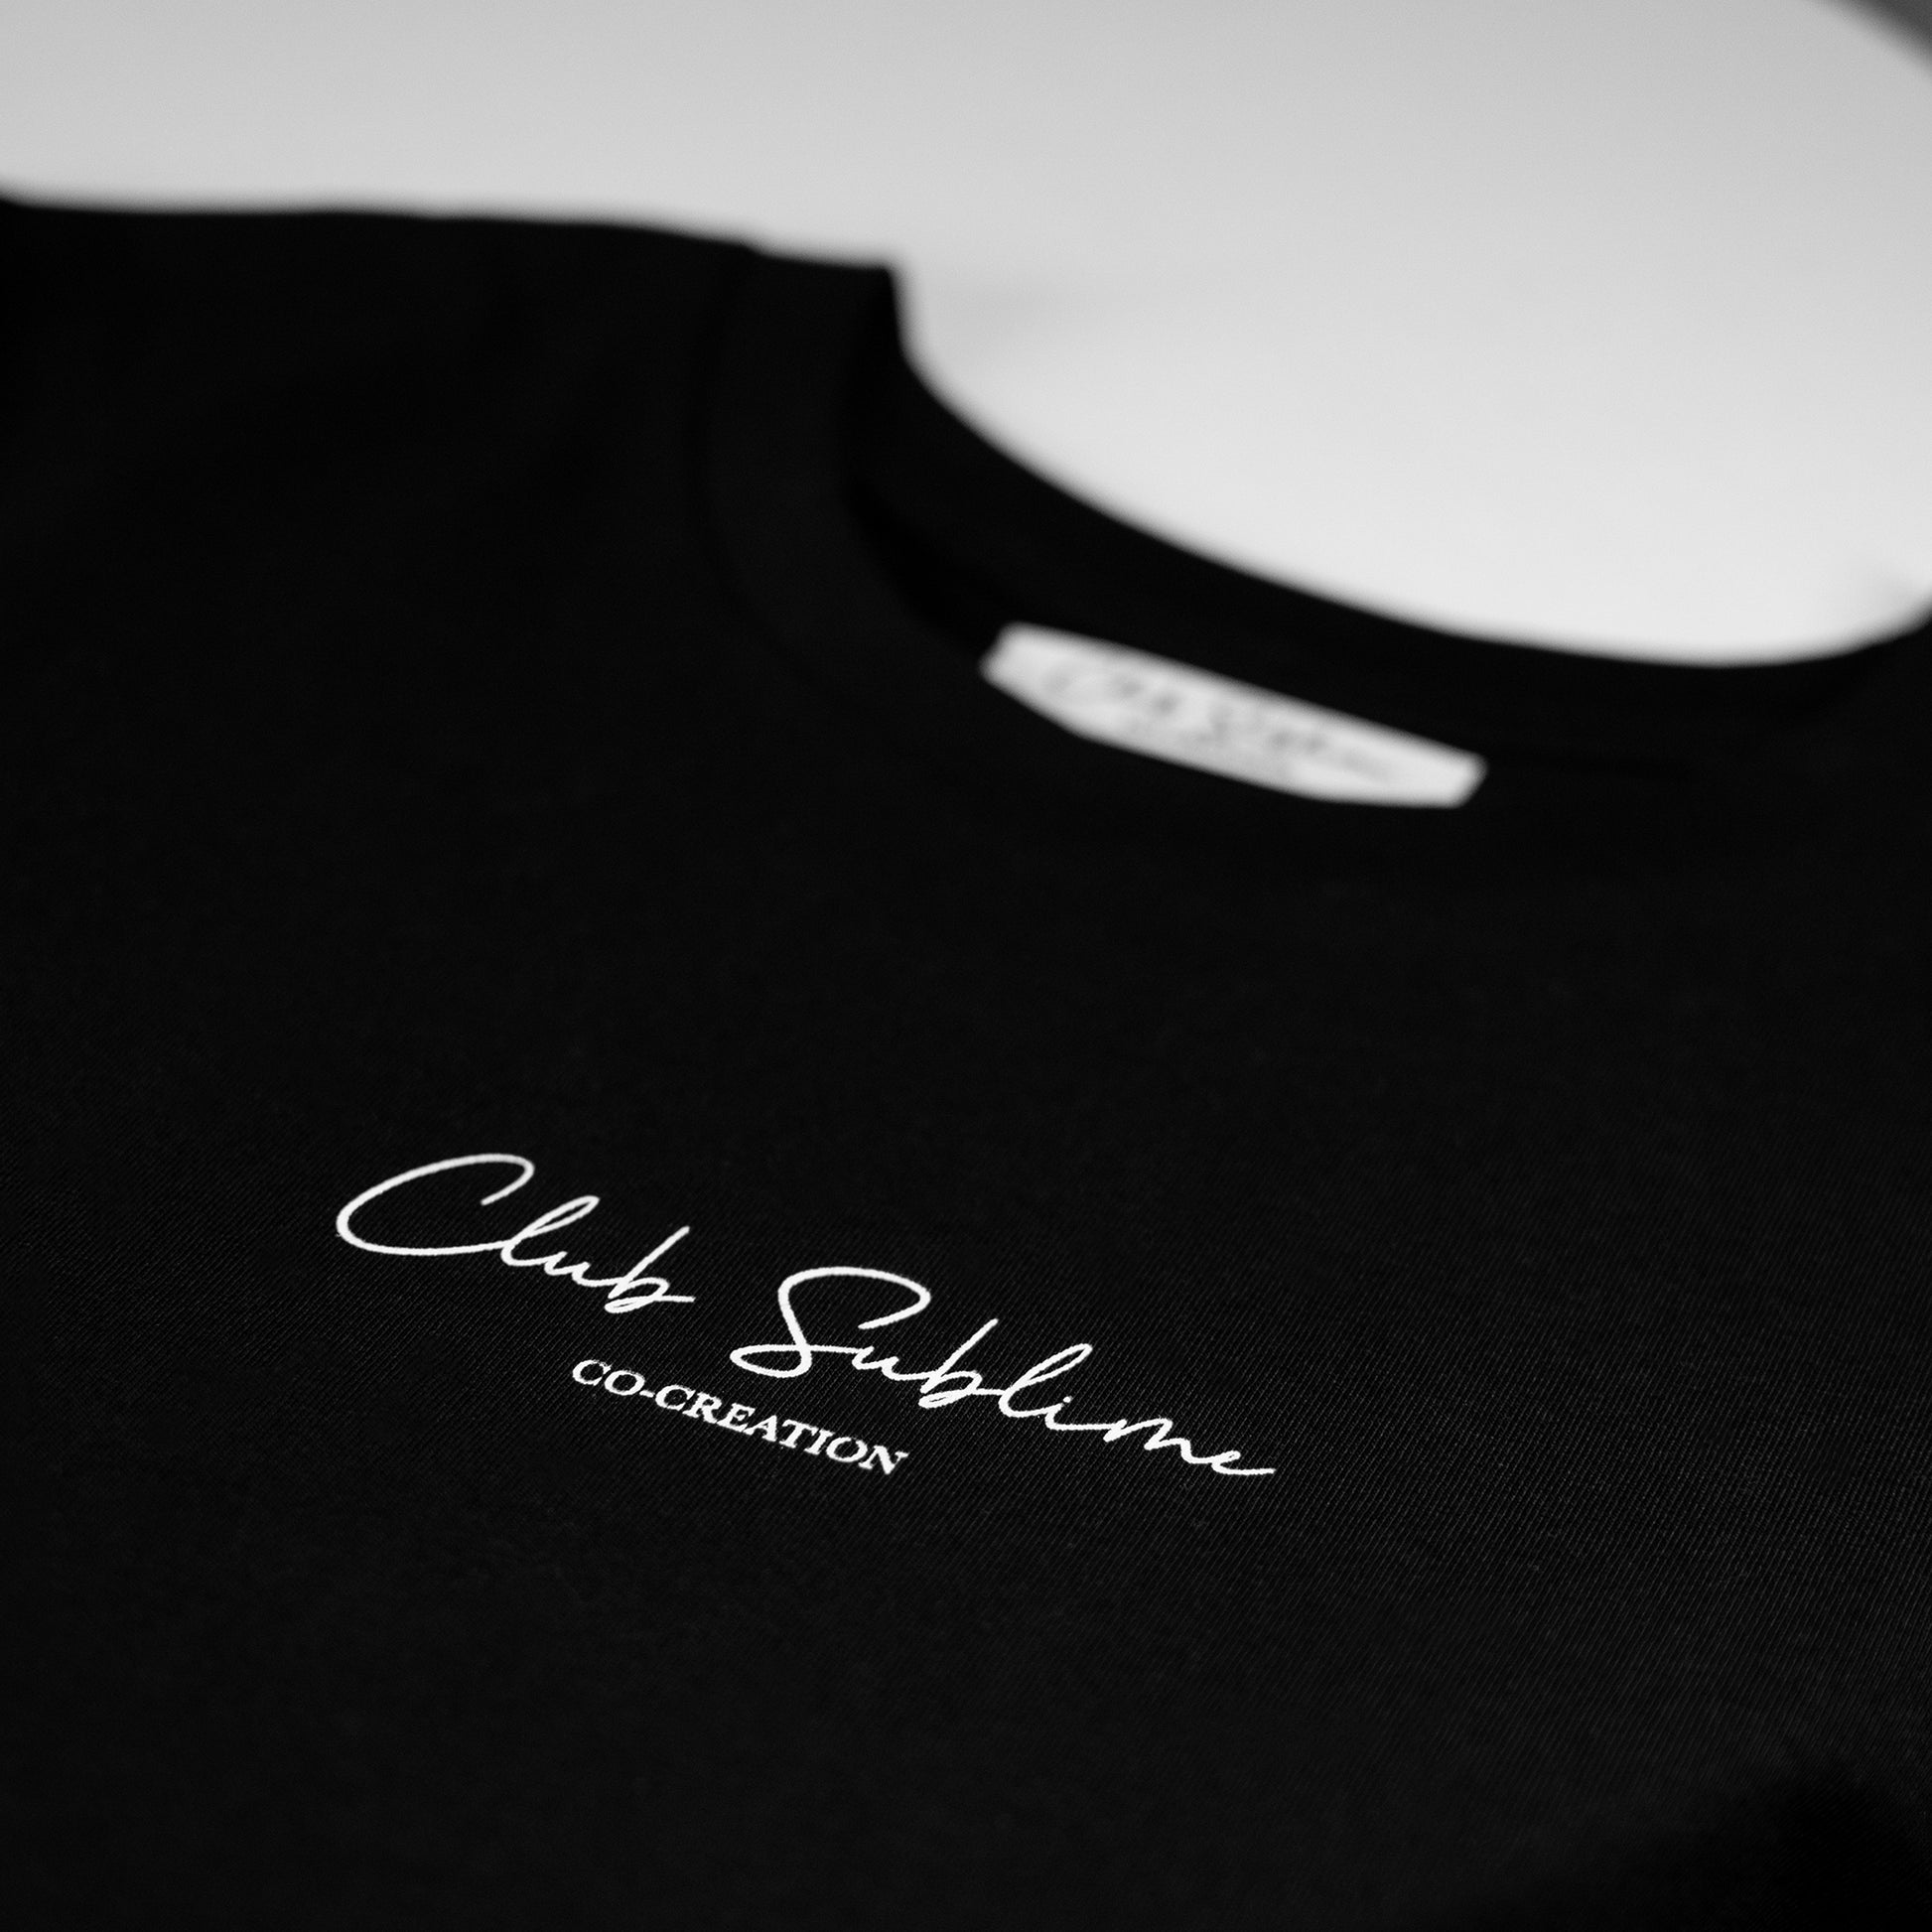 "Le Club" : la véritable signature du Club Sublime apposée sur le devant de ce T-shirt confortable et classy. Celui-ci dévoile un peu plus notre vision artistique et minimaliste. C'est la pièce fondatrice de notre collection Printemps 2021.